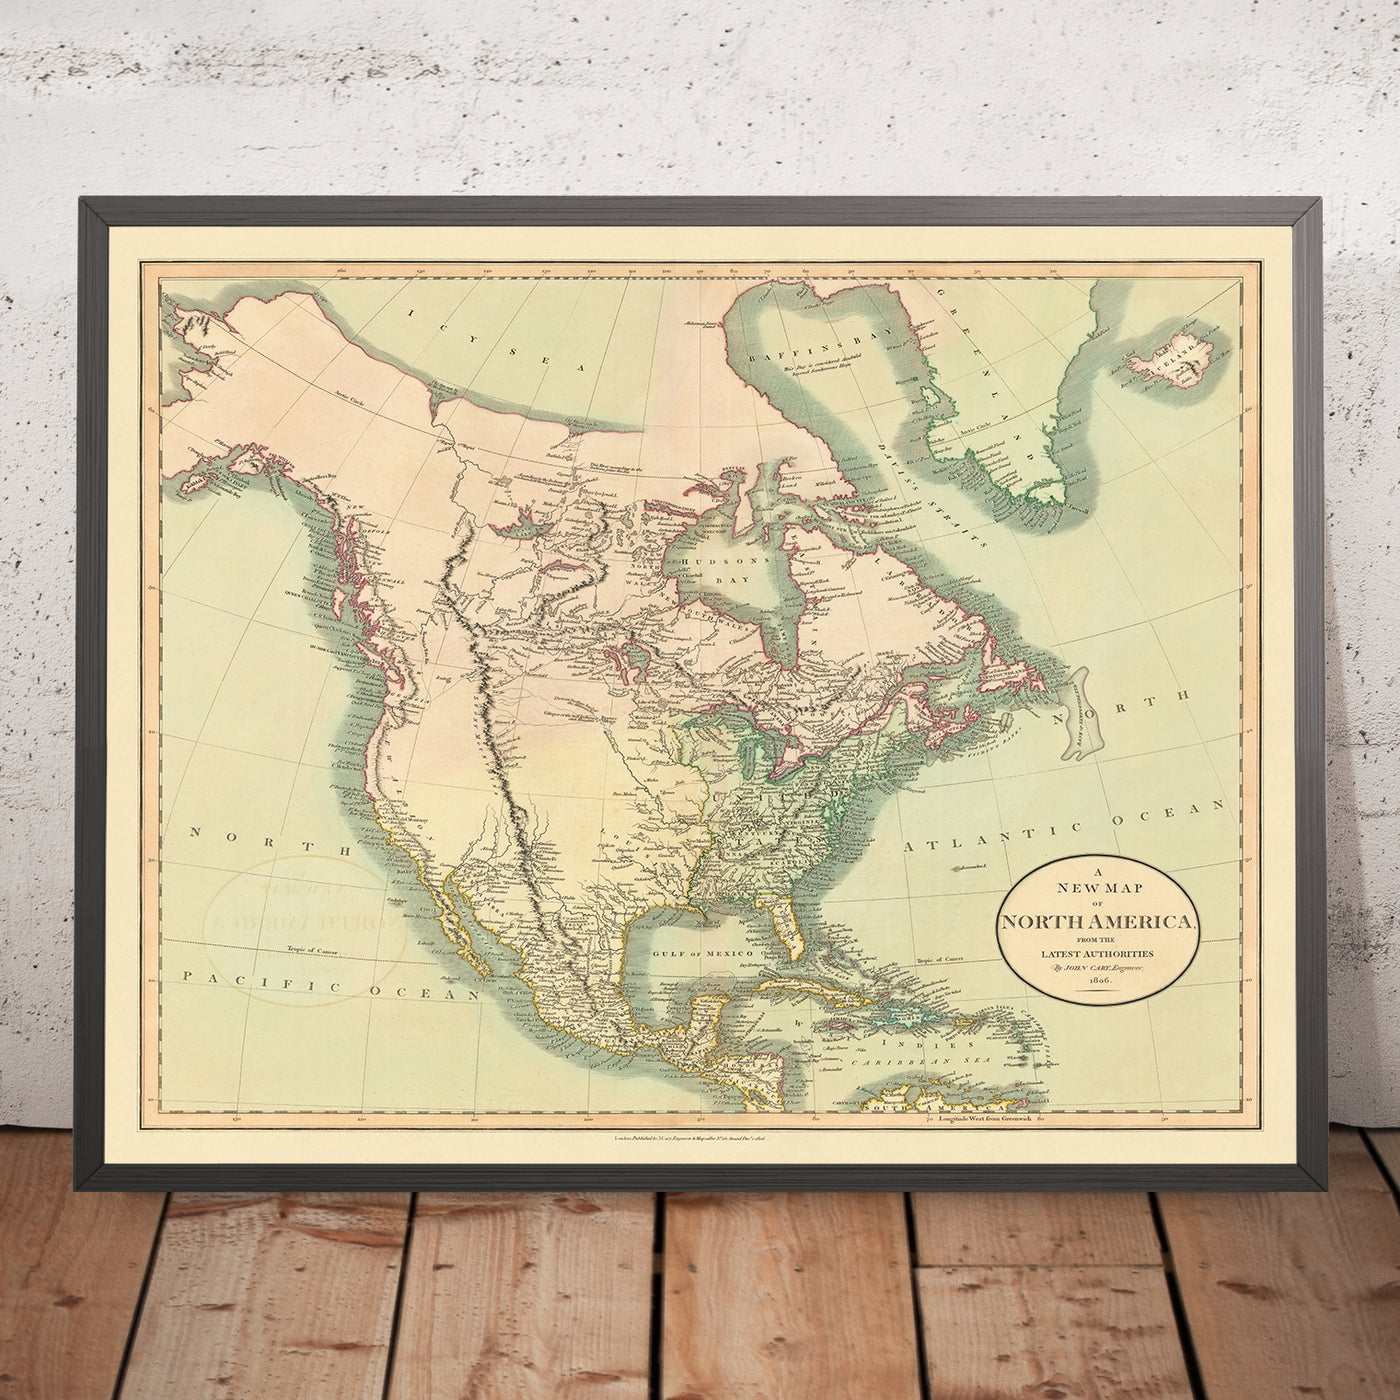 Alte Karte von Nordamerika von Cary, 1806: Kauf in Louisiana, Rocky Mountains, Arktischer Ozean, Hudson Bay, Nordwestpassage